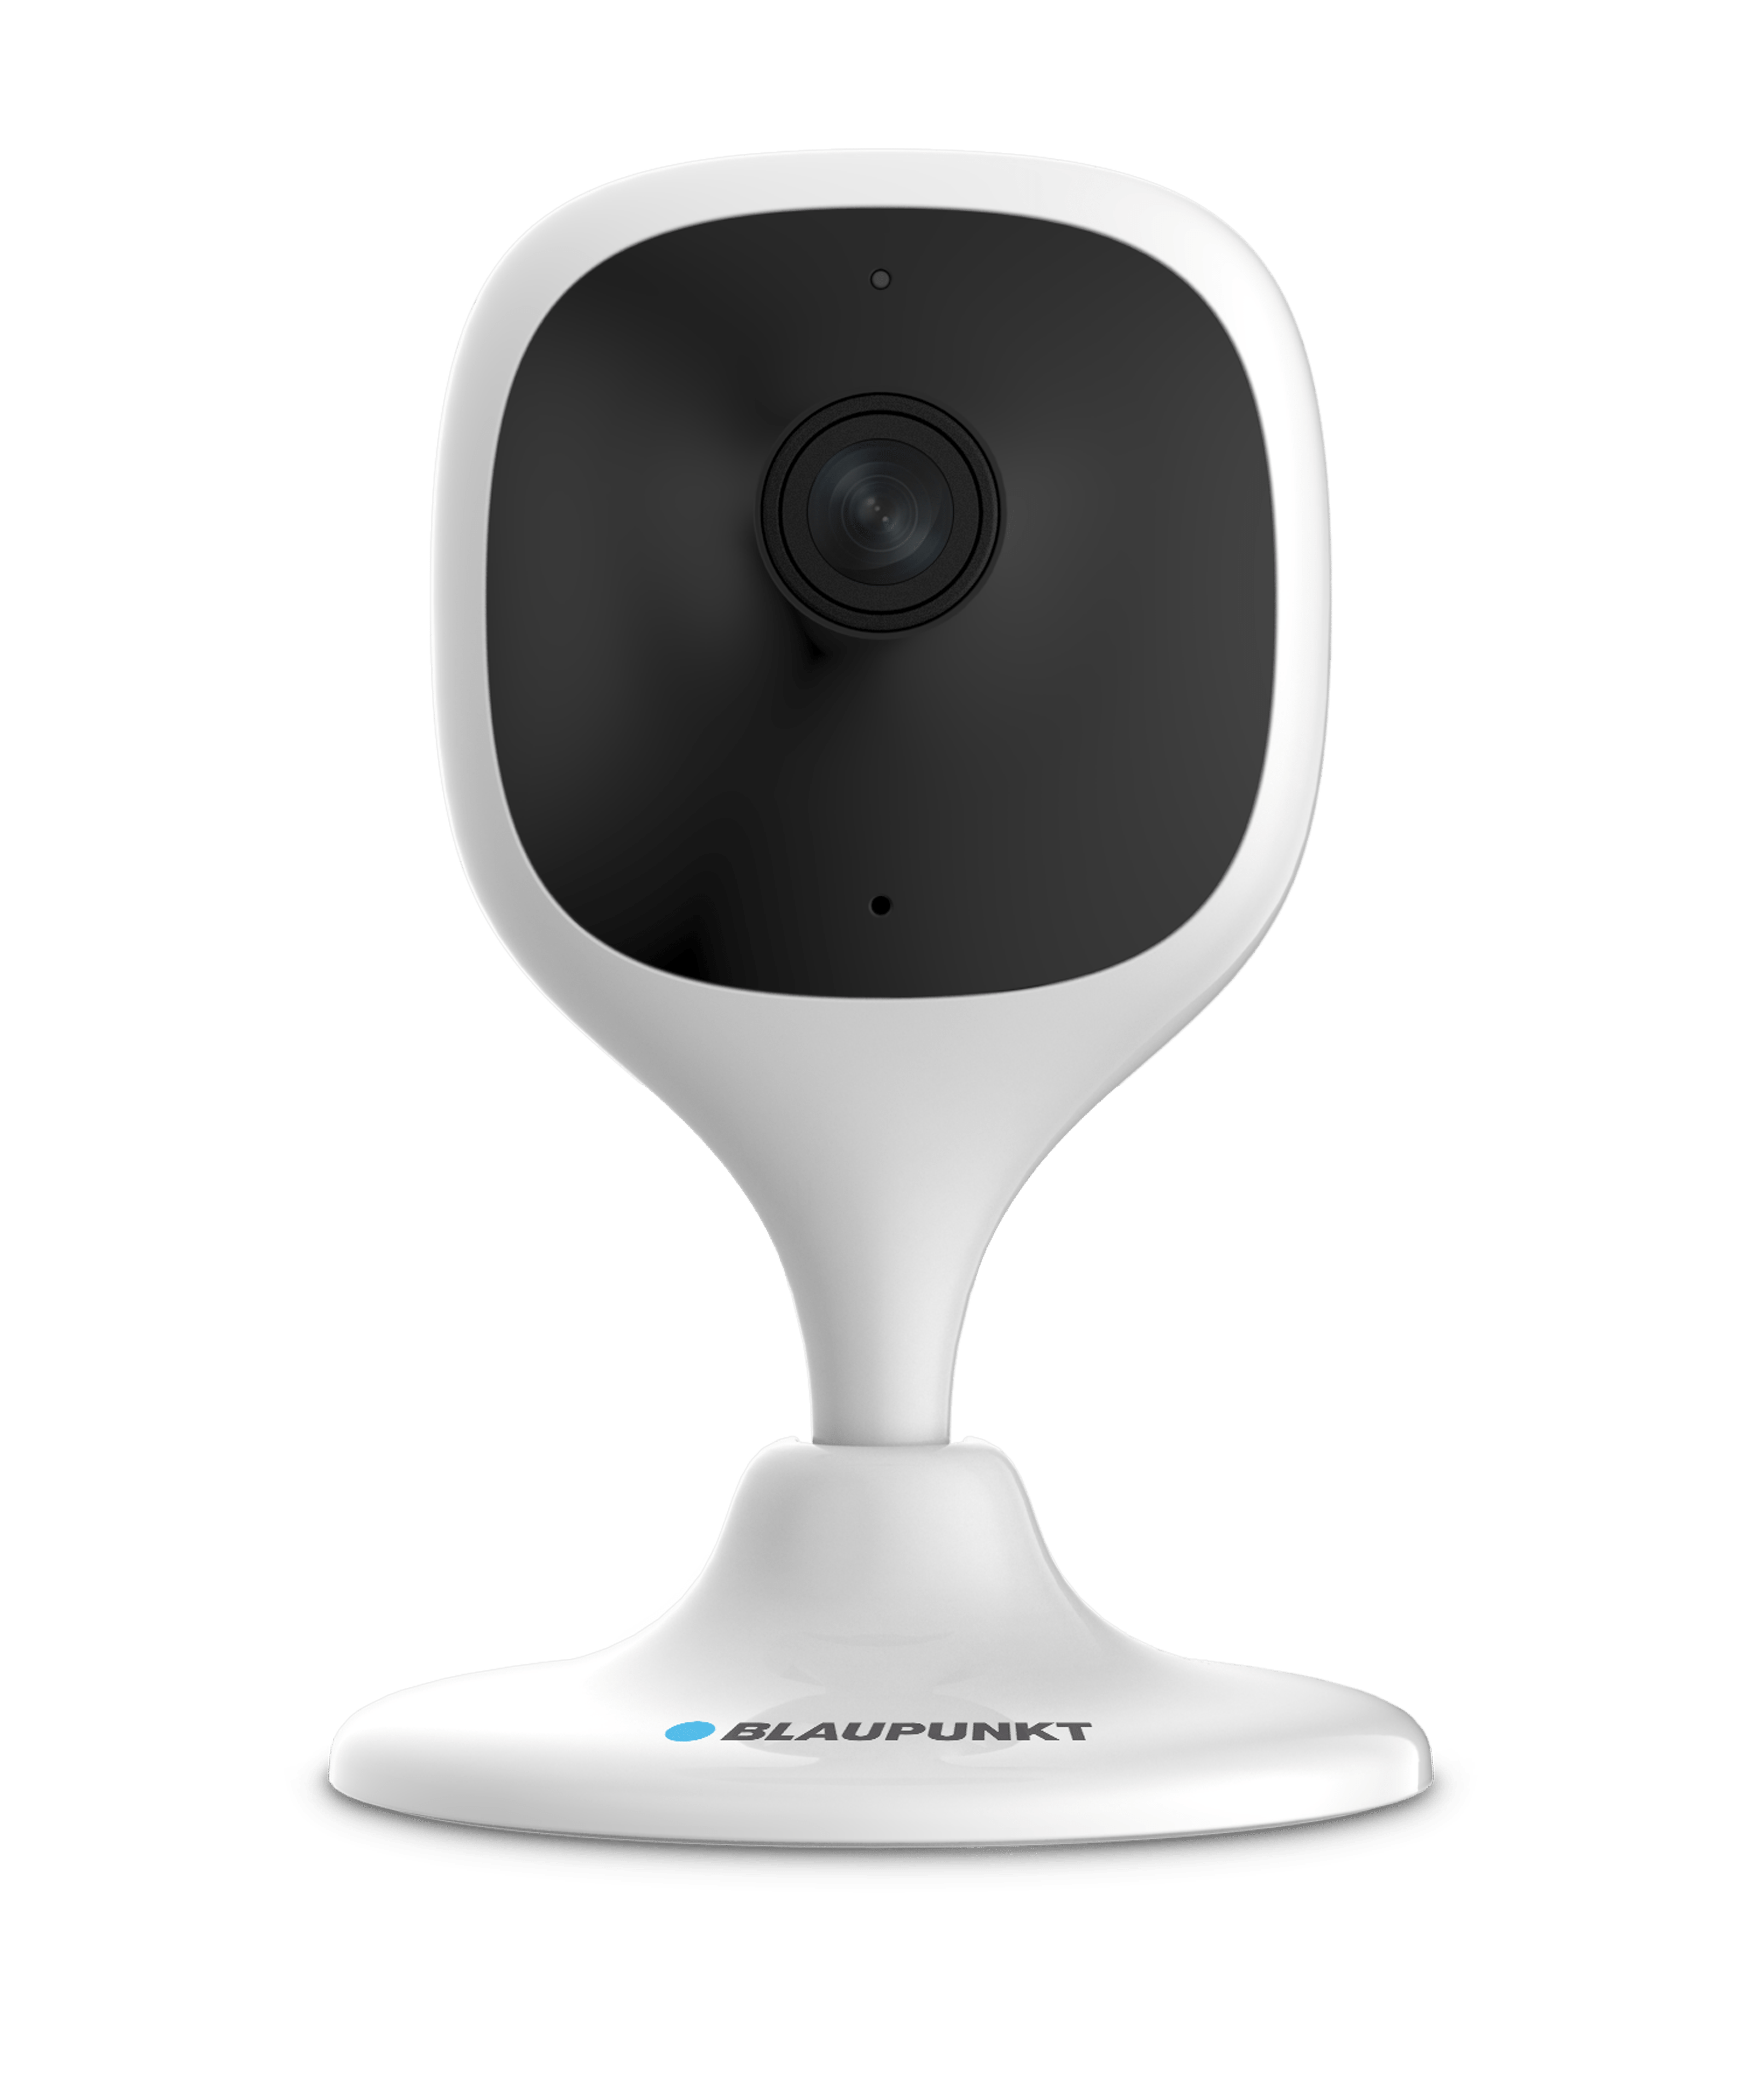 Blaupunkt Trackcam VIO-HP20 WIFI indoor Überwachungskamera